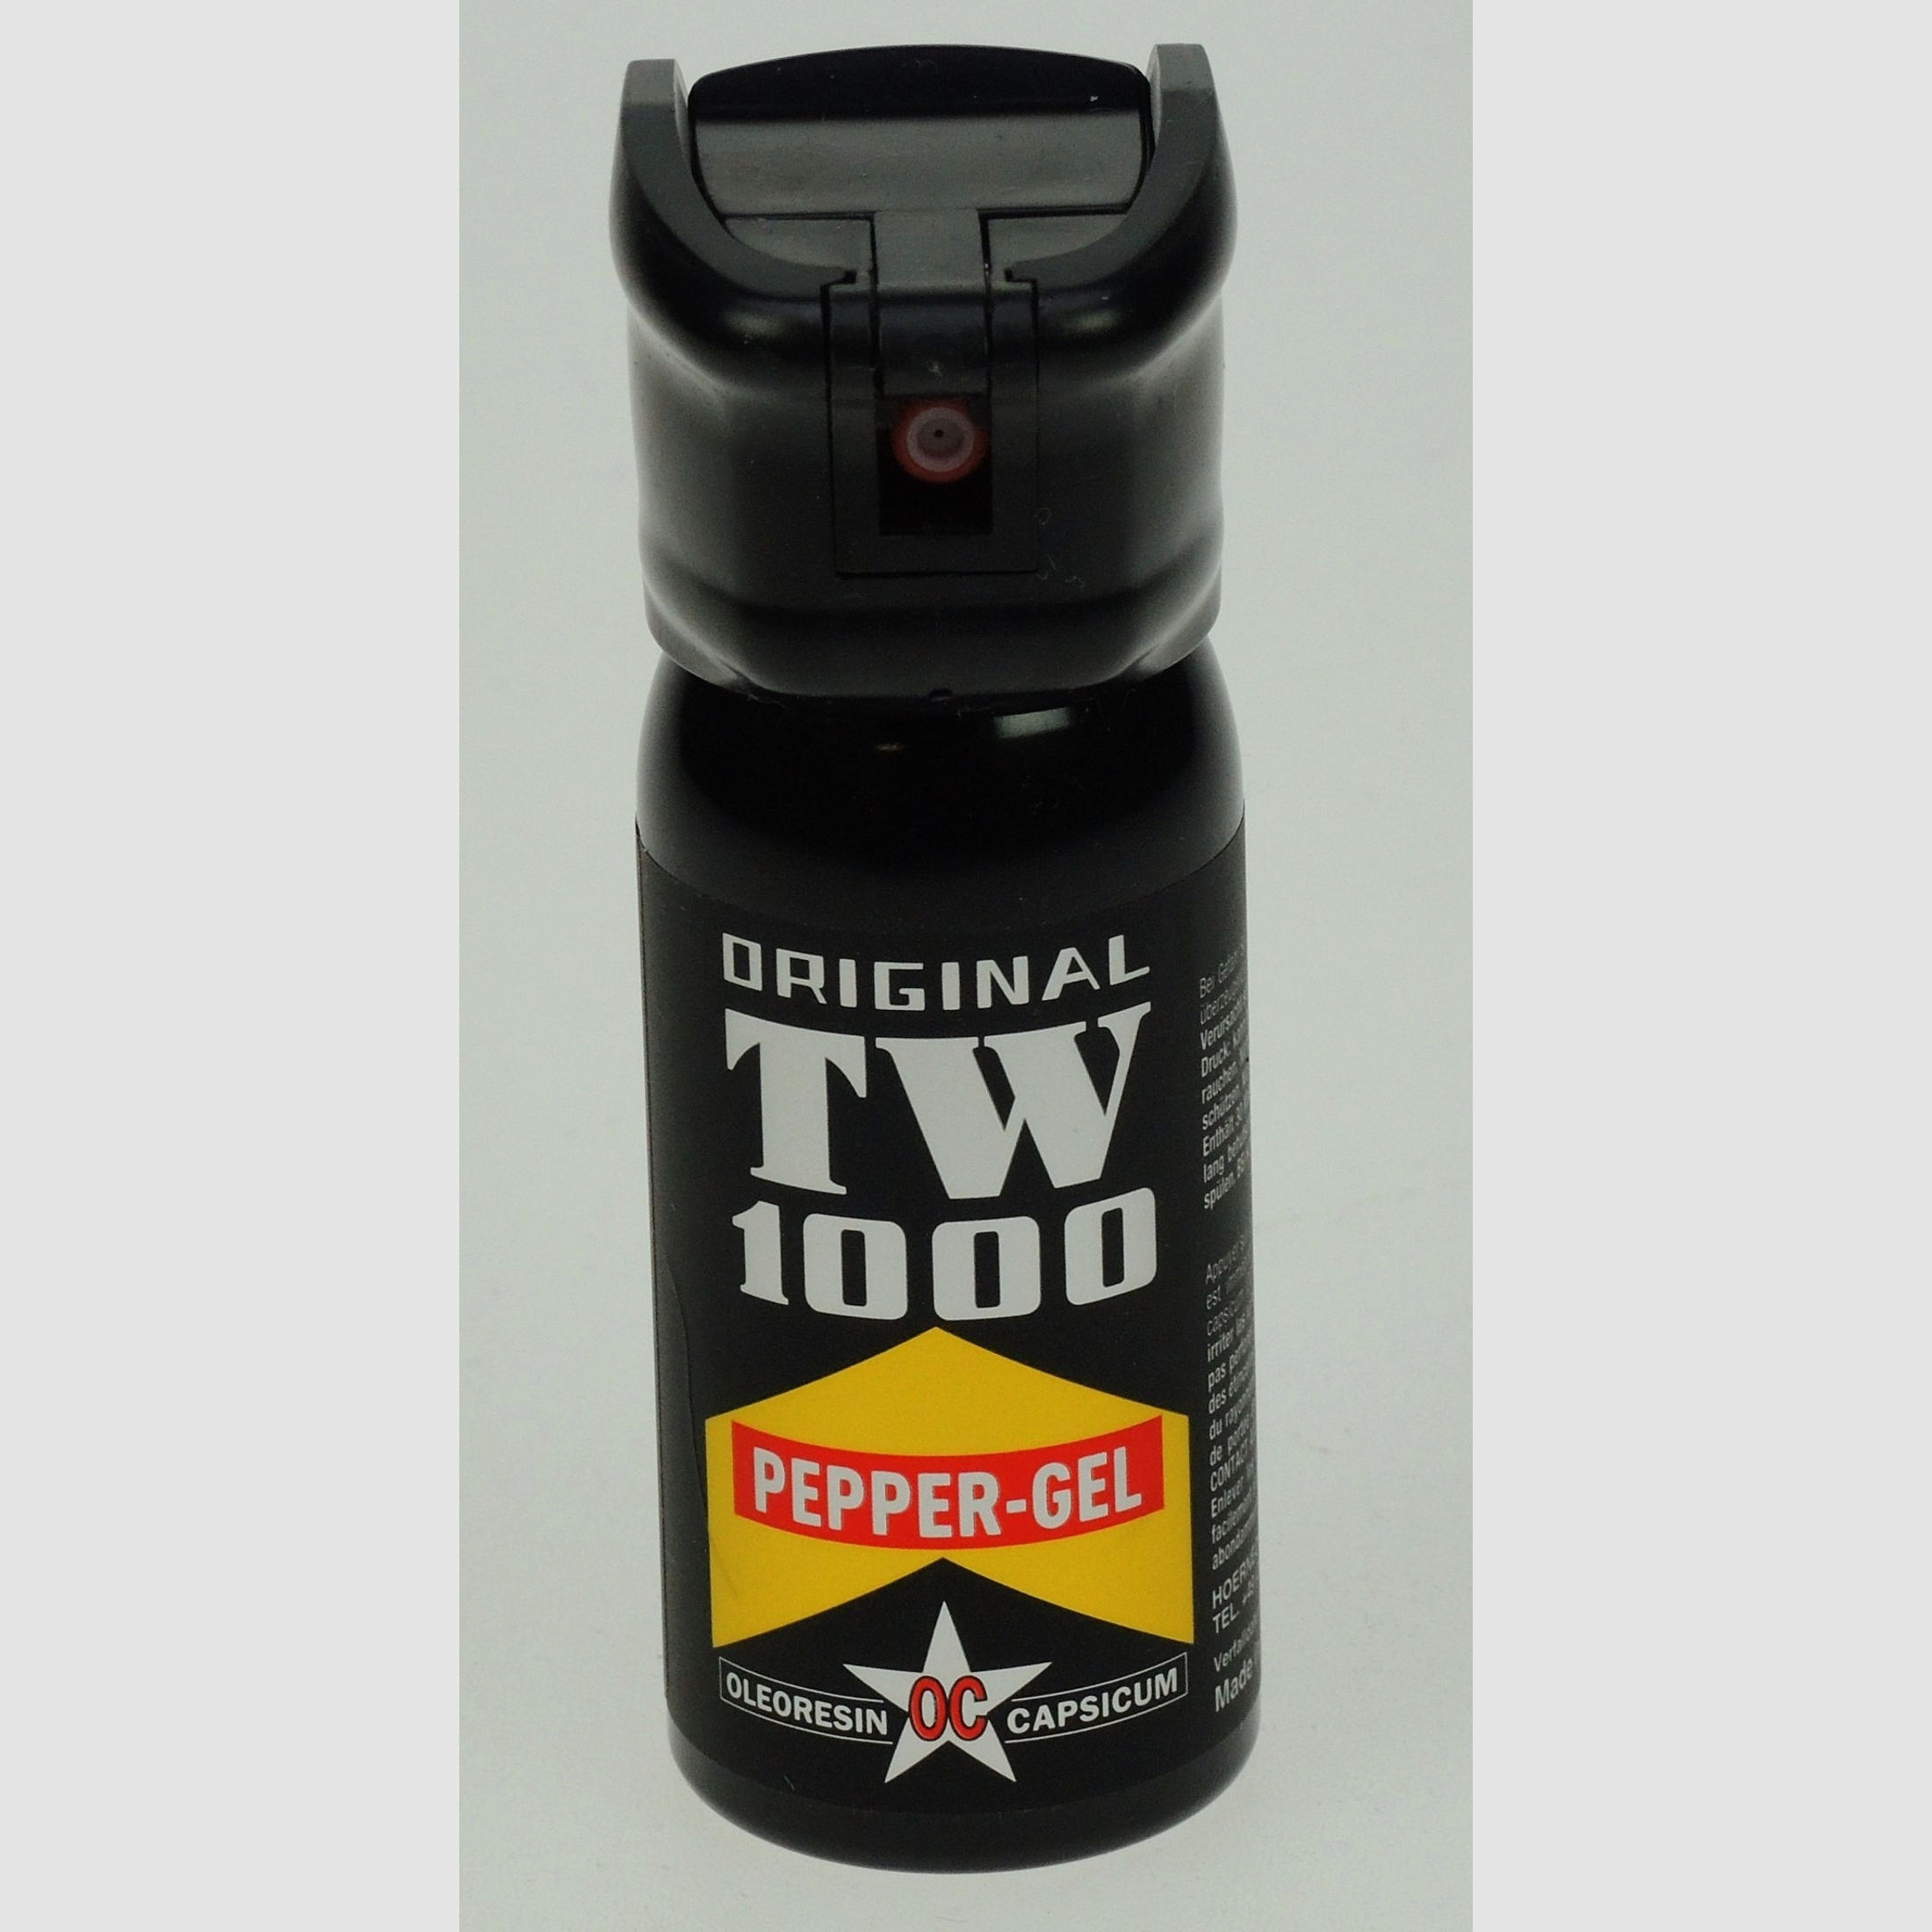 TW 1000 Pepper-Gel 50ml